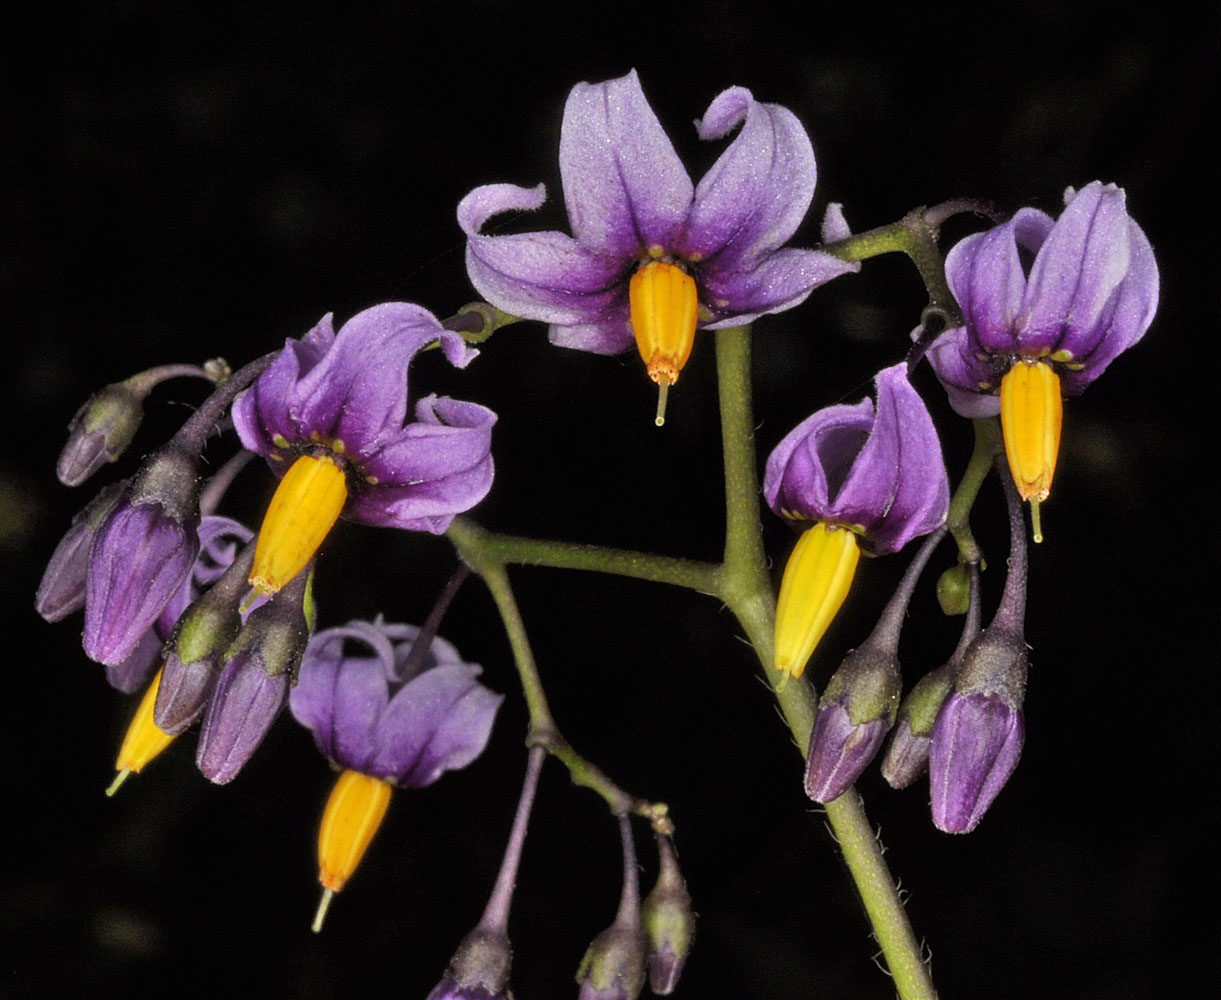 Flora of Eastern Washington Image: Solanum dulcamara